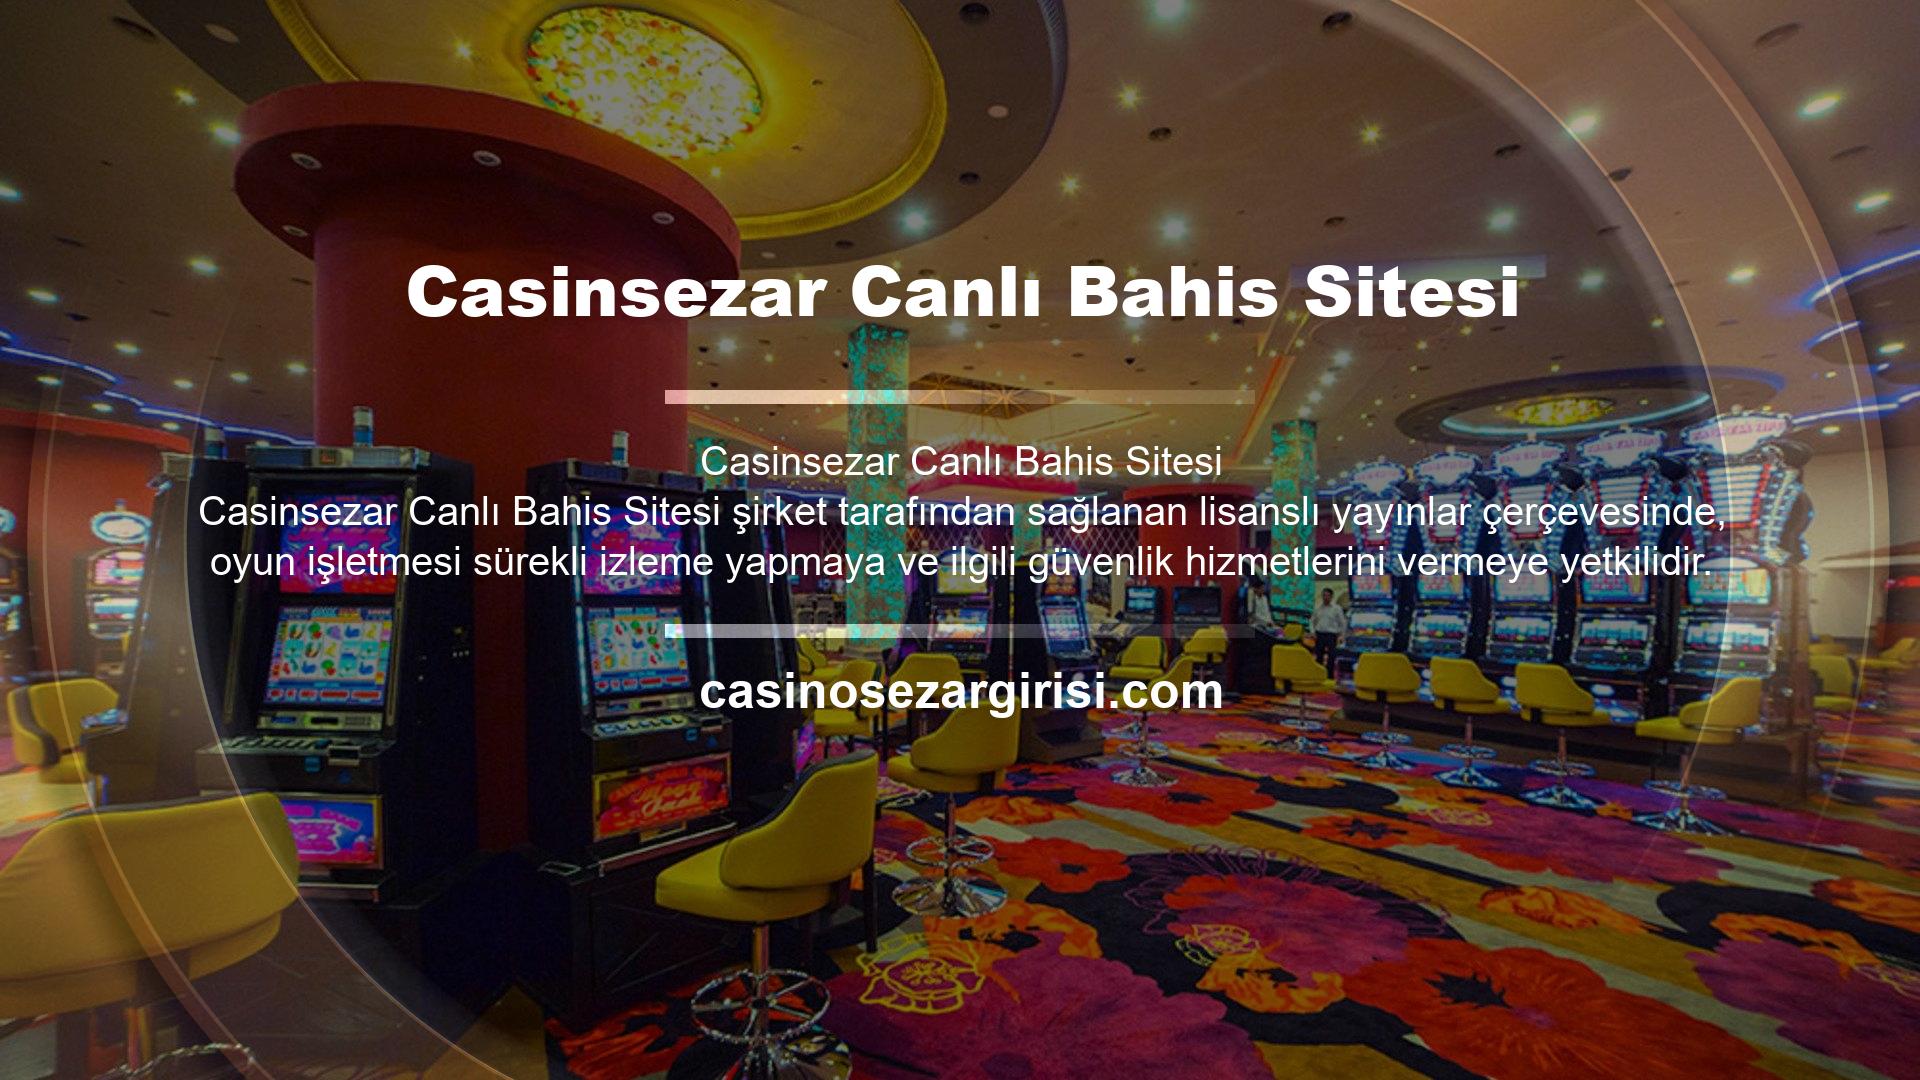 Casinsezar canlı bahis ve casino oyun sitesi, çeşitli bonus seçenekleri ile müşterilerine iyi kazançlar sağlamayı amaçlamaktadır